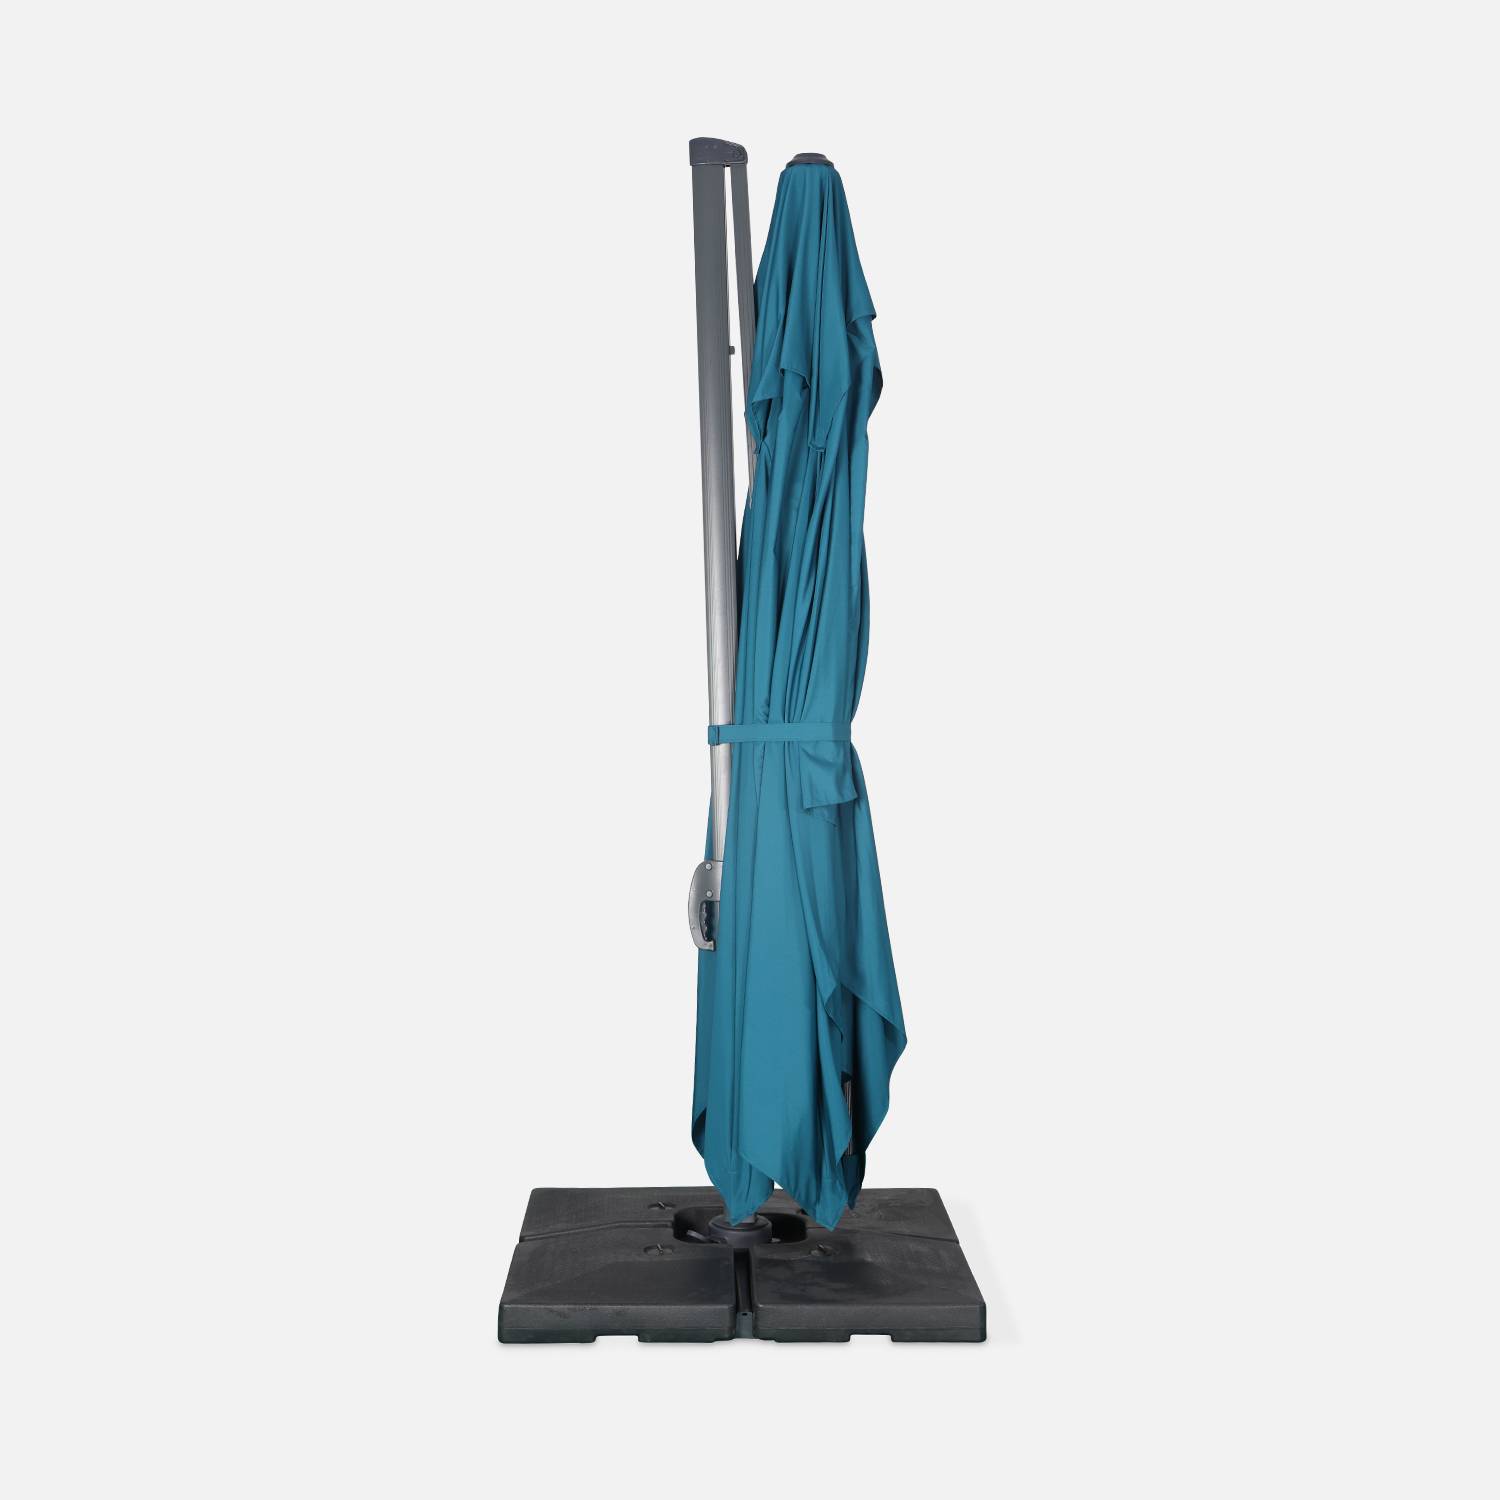 Parasol déporté rectangulaire 3 x 4 m haut de gamme - St. Jean de Luz - Bleu canard - Parasol excentré inclinable, rabattable et rotatif à 360°. Photo4